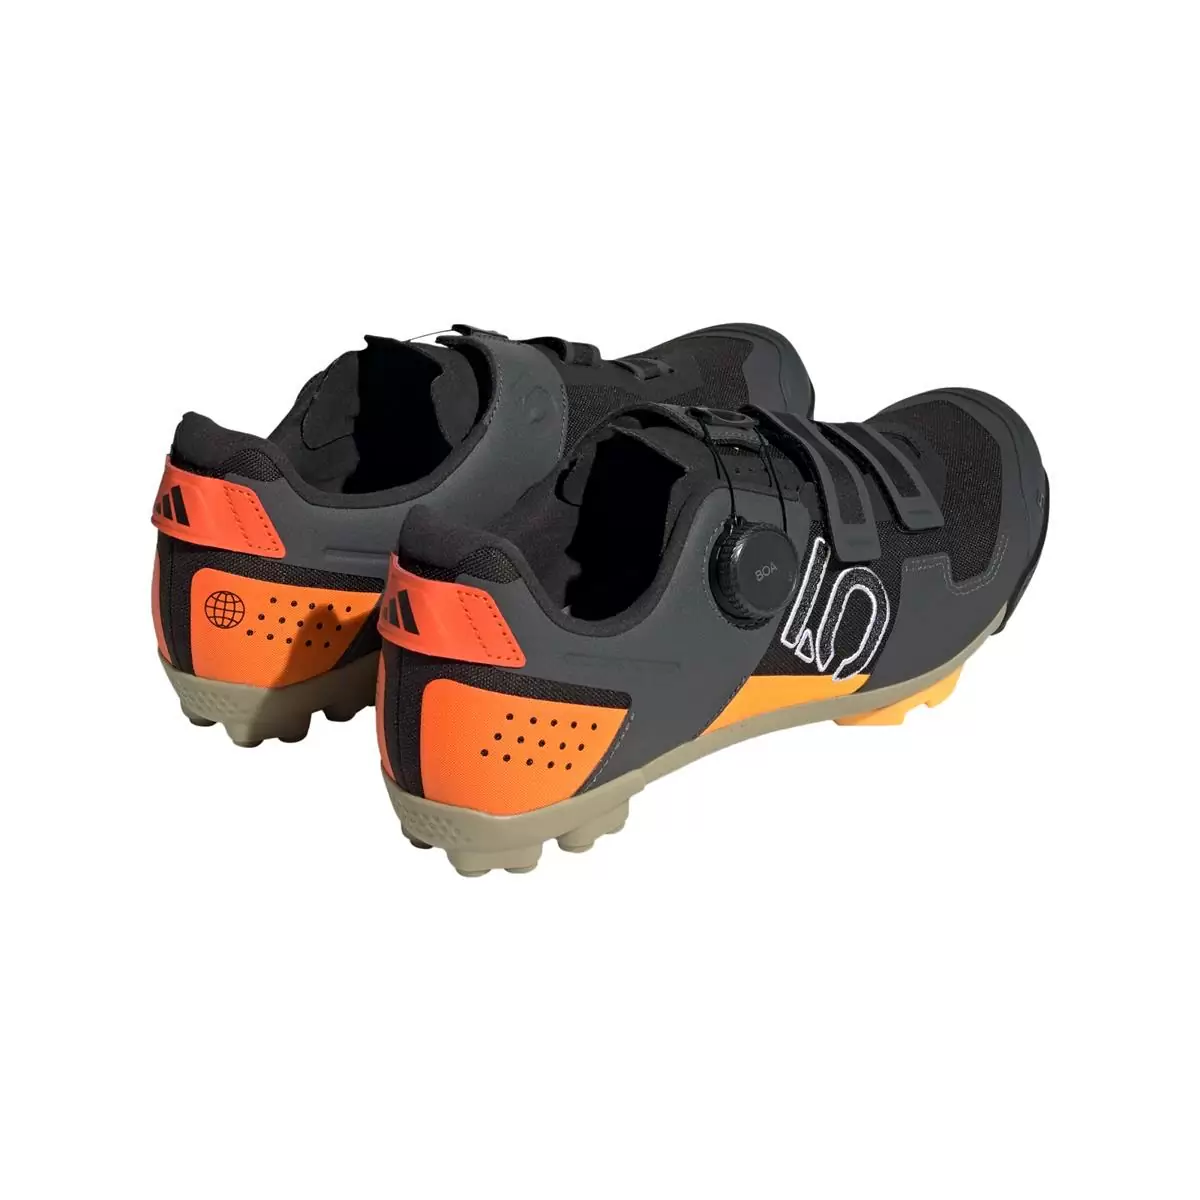 Clip 5.10 Kestrel Boa MTB Shoes Black/Orange Size 40 #4